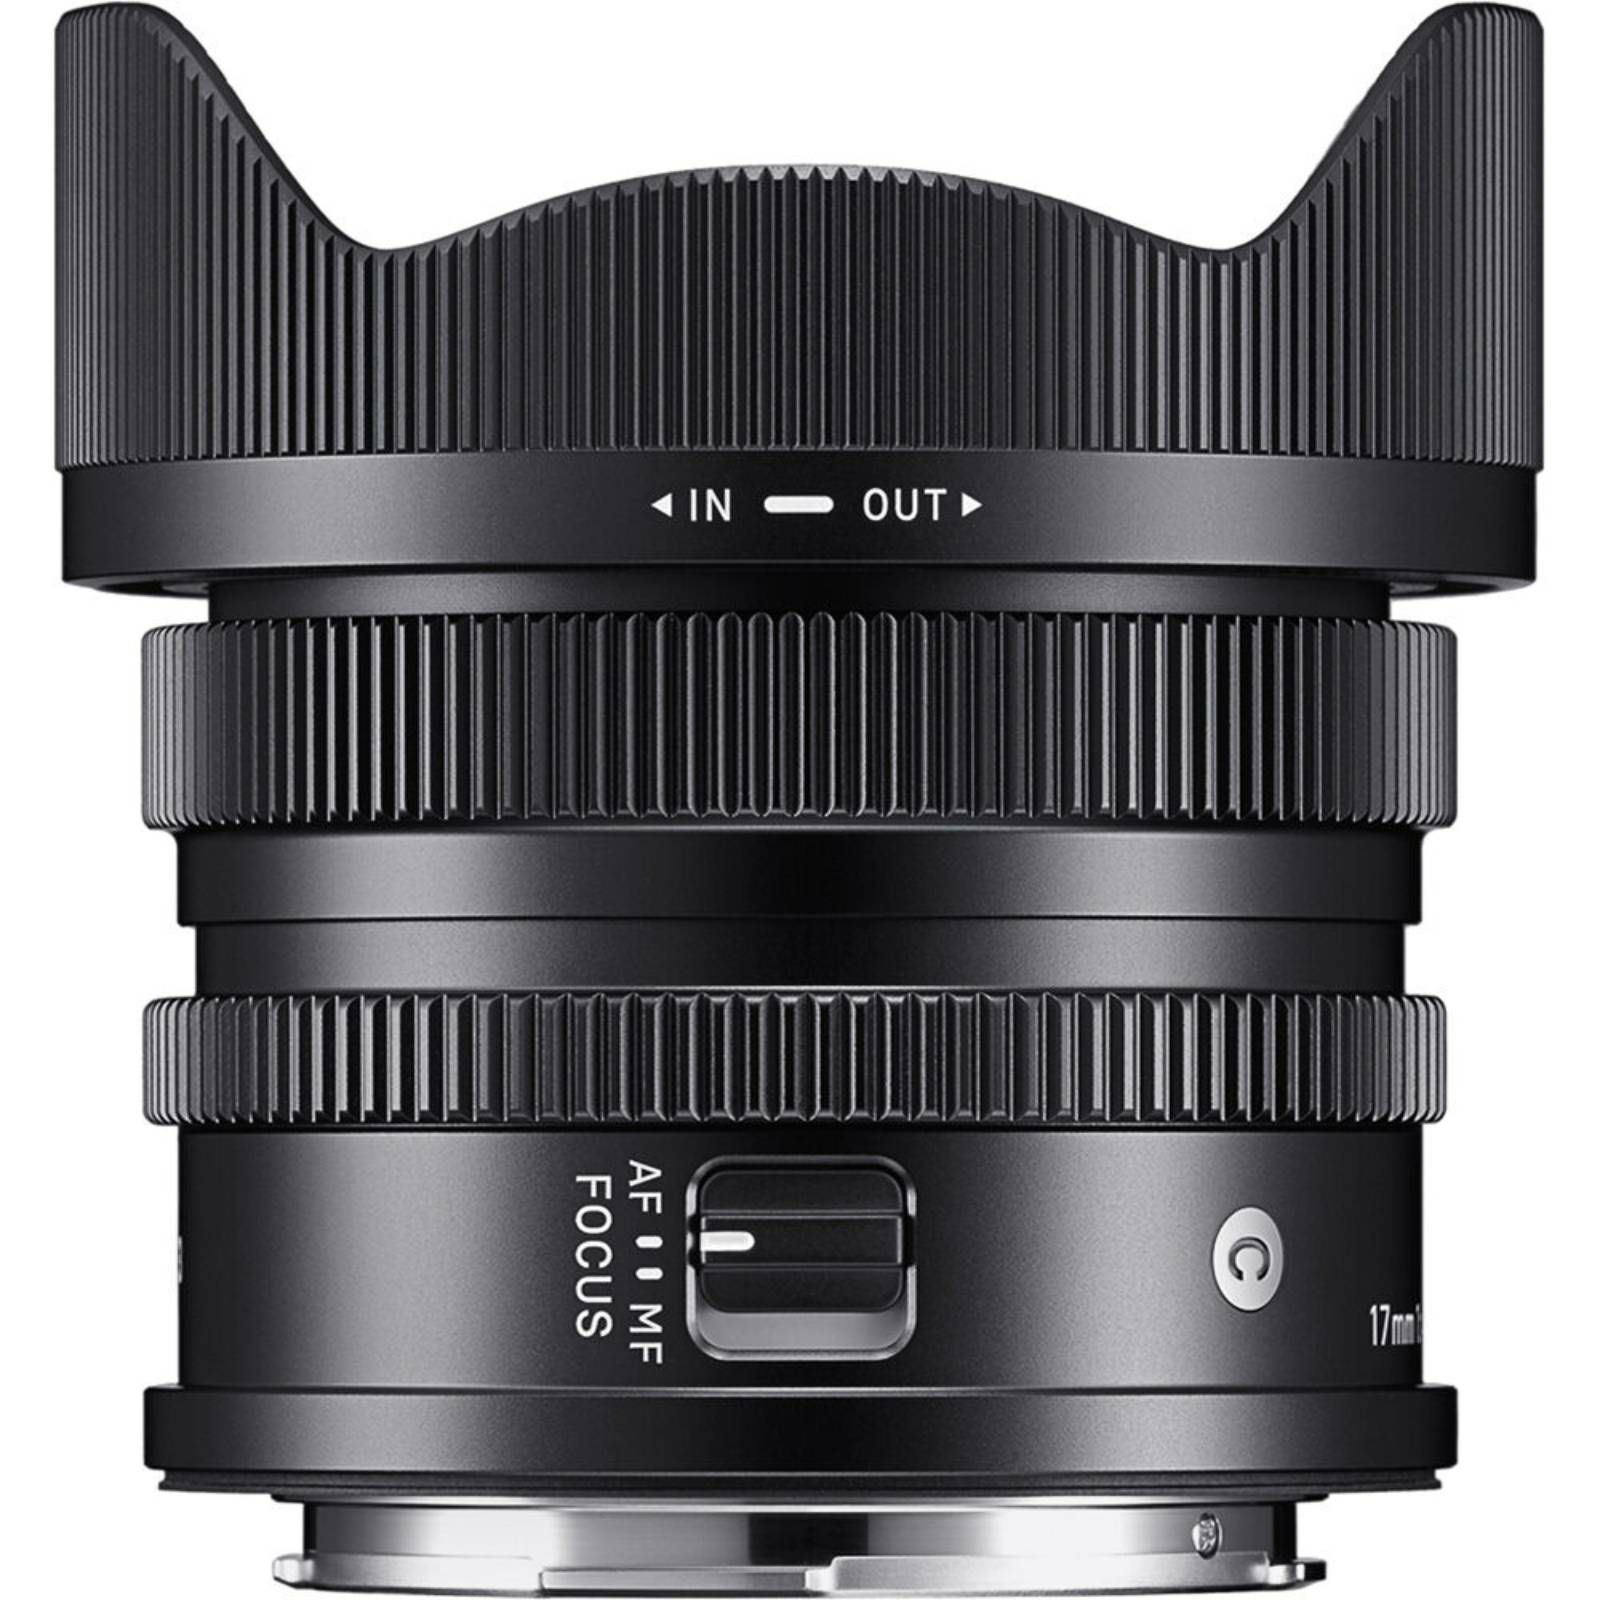 Sigma 17mm f/4 DG DN Contemporary objektiv za Sony E-mount